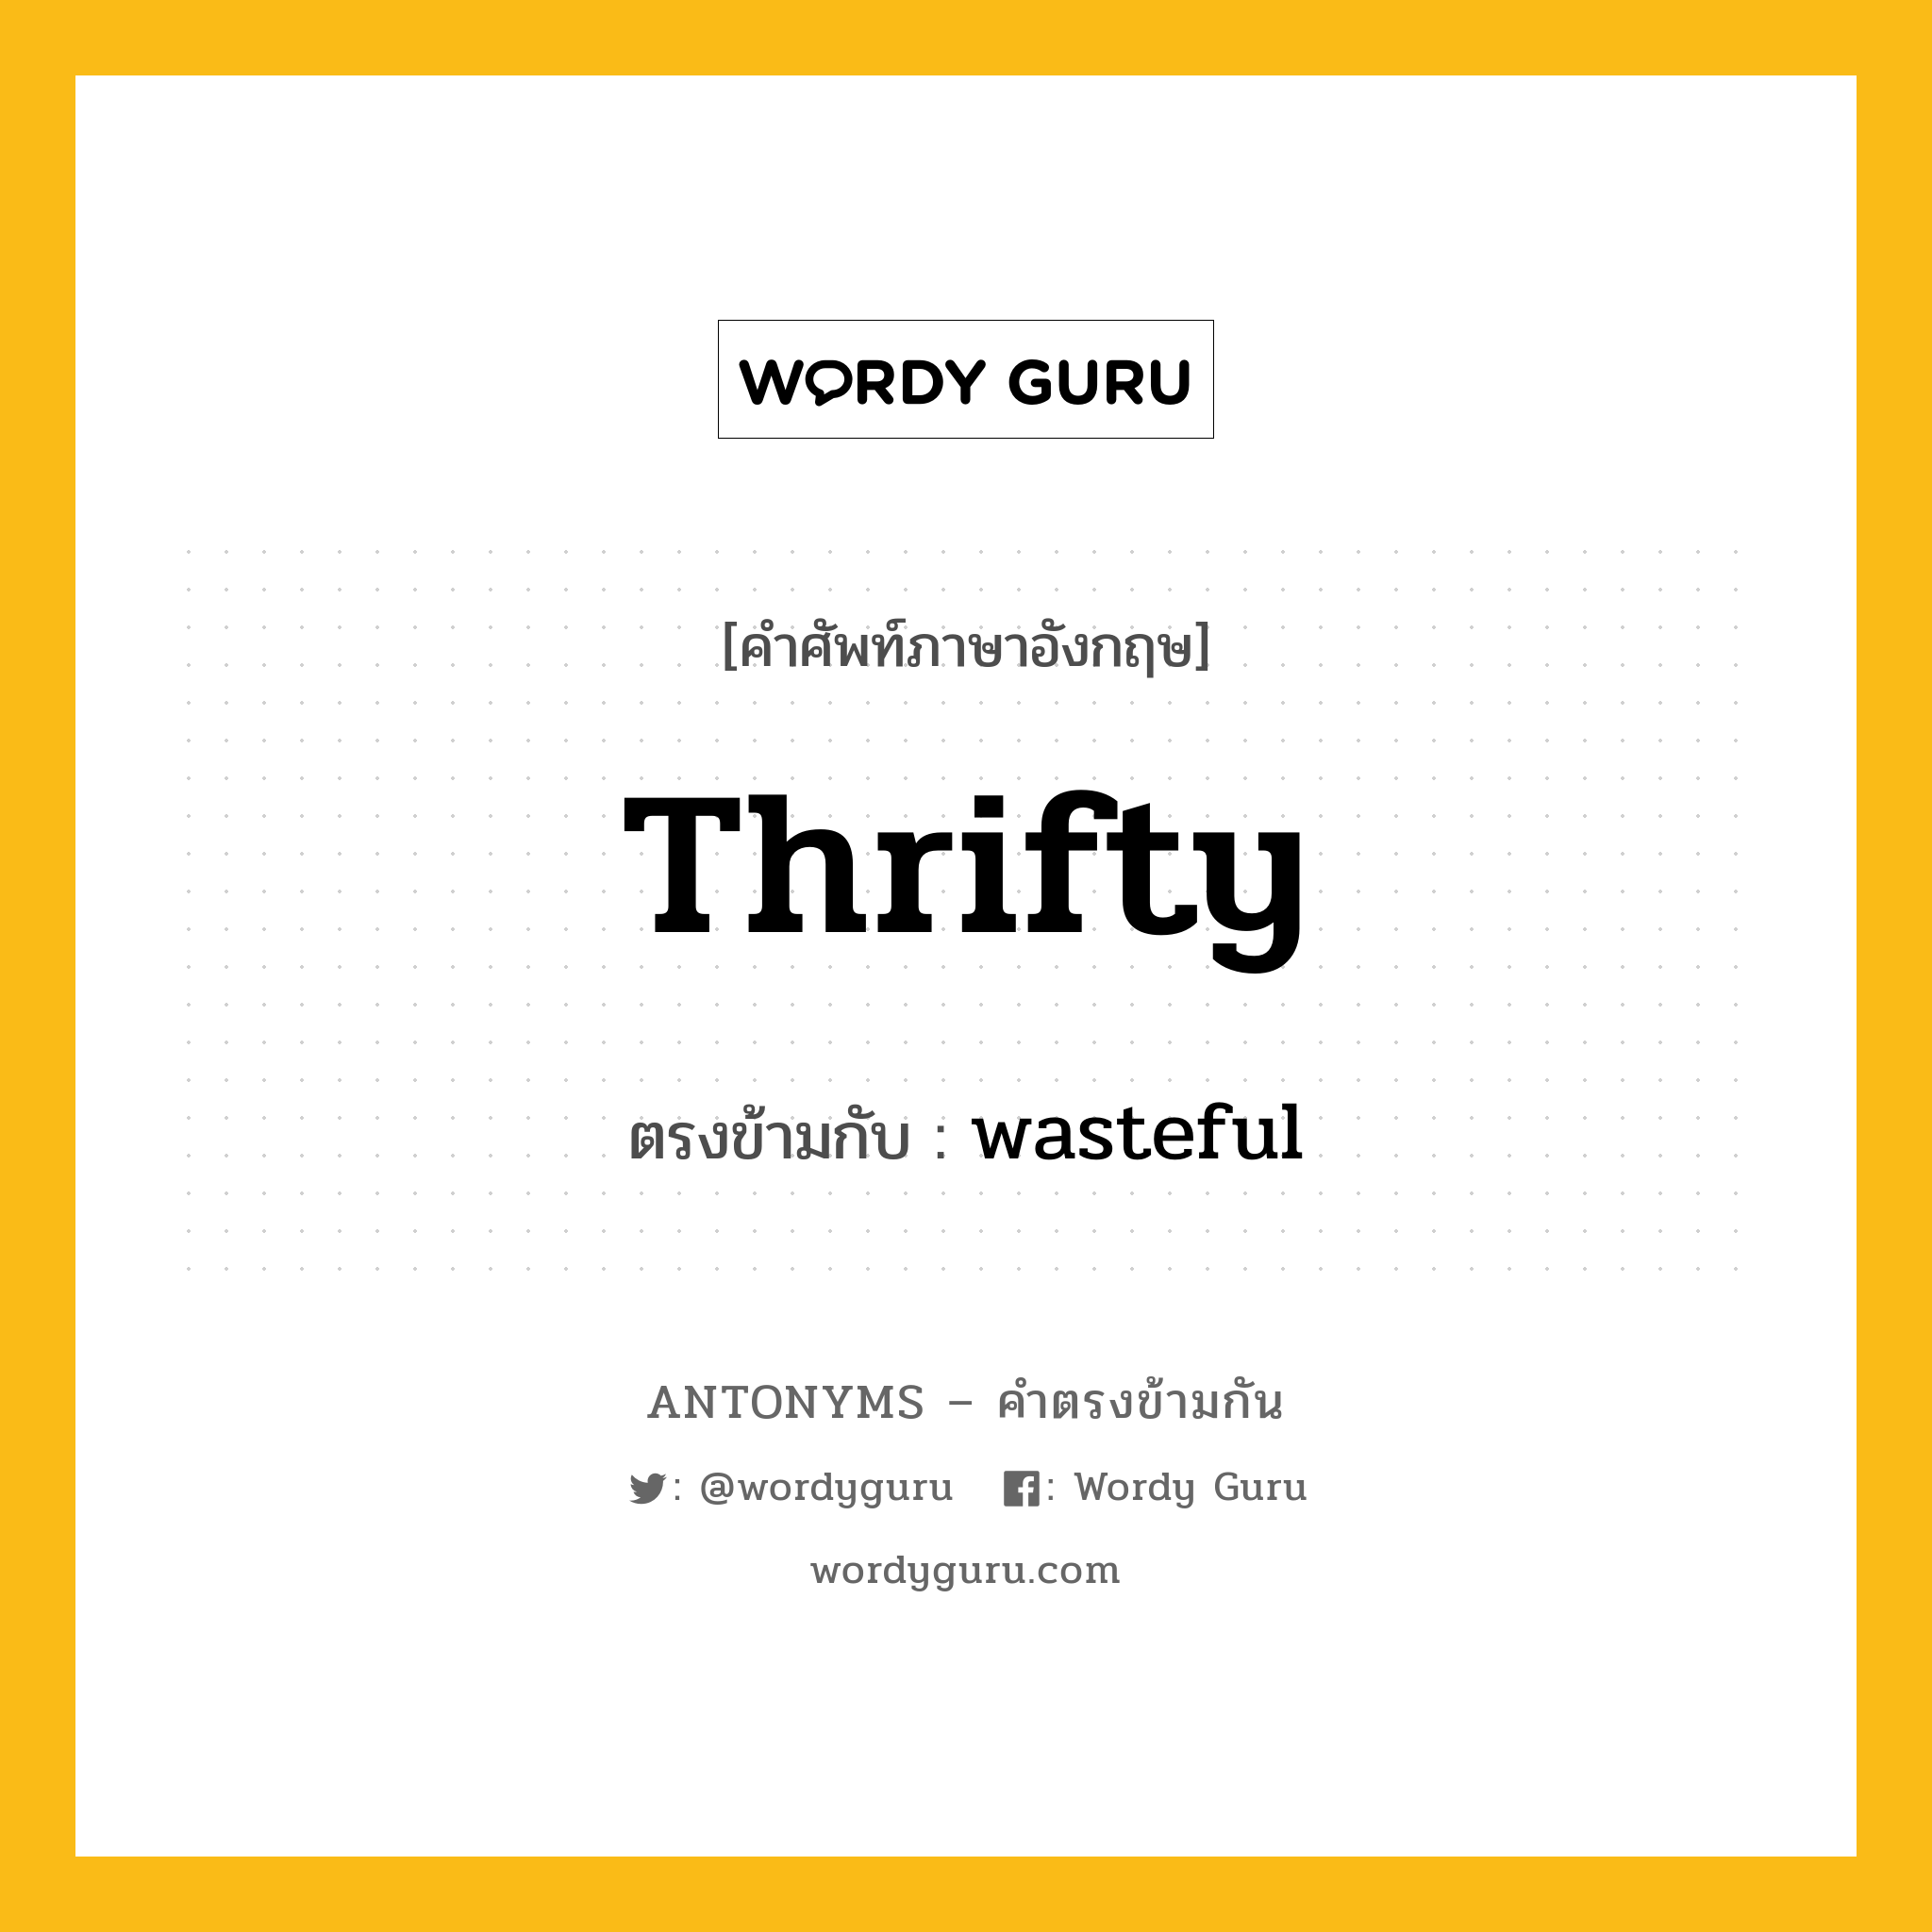 thrifty เป็นคำตรงข้ามกับคำไหนบ้าง?, คำศัพท์ภาษาอังกฤษ thrifty ตรงข้ามกับ wasteful หมวด wasteful